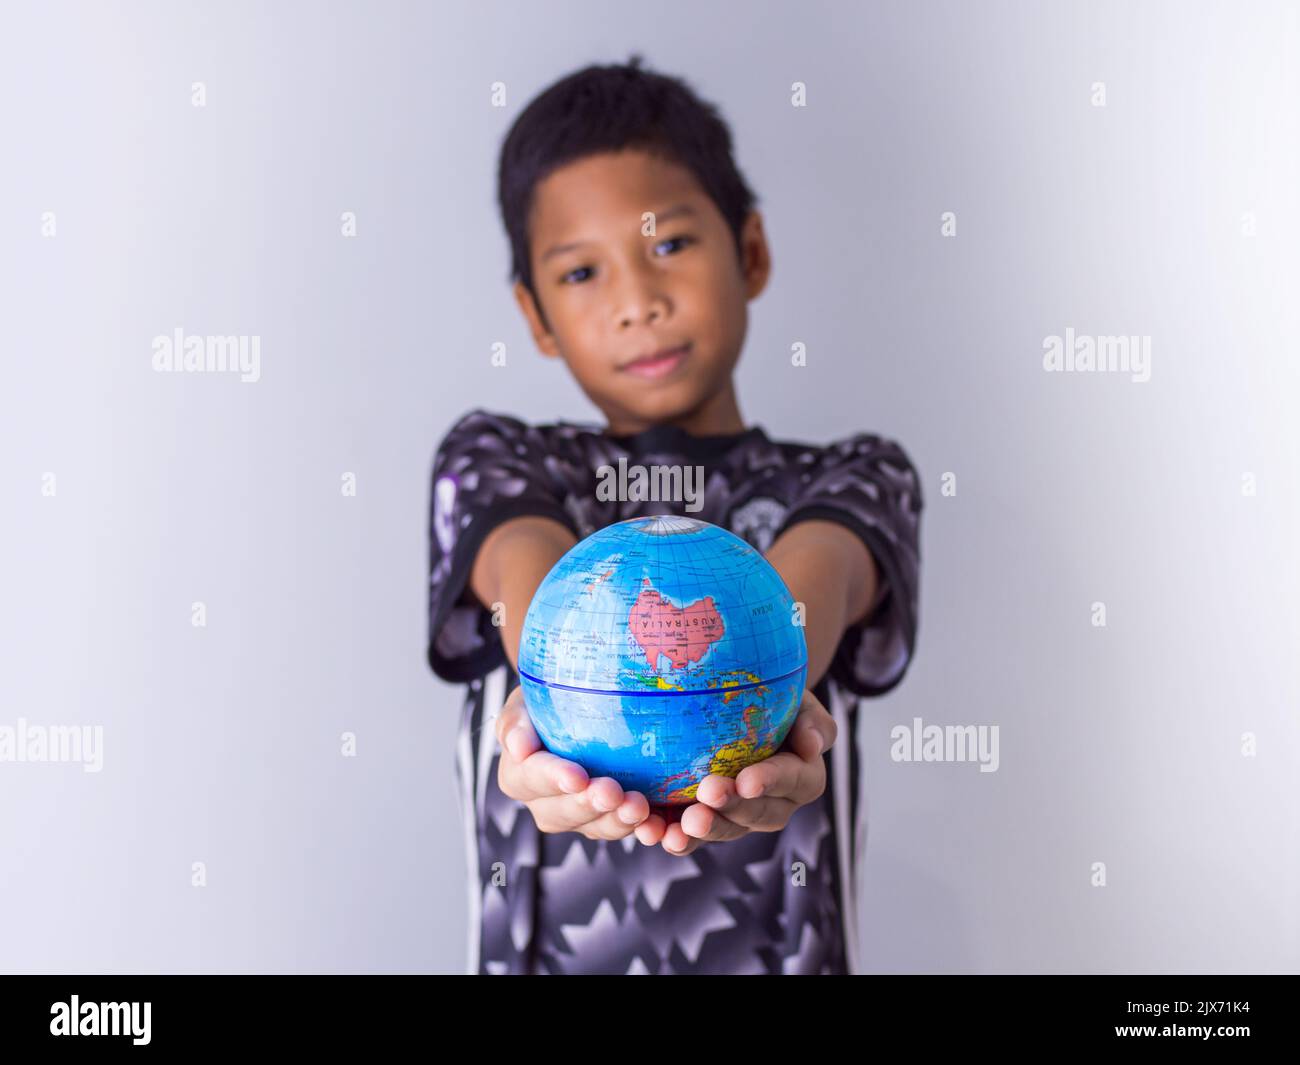 Garçon tenant un globe se démarquer devant montrer la puissance de la nouvelle génération pour continuer à développer notre monde. Banque D'Images